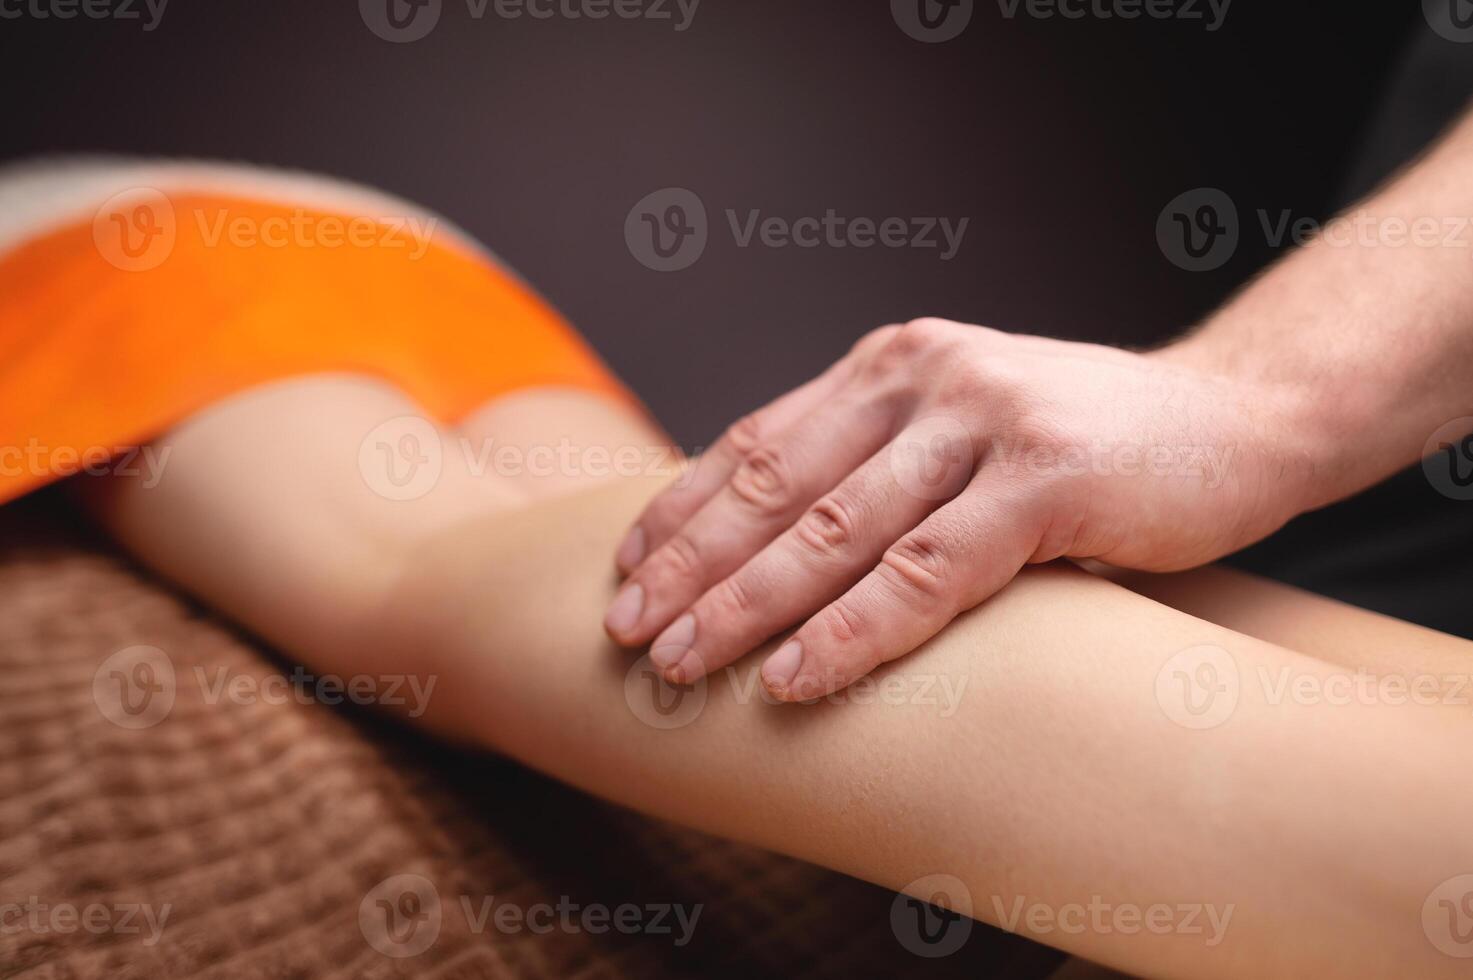 masculino manos masajear el humano becerro músculo. terapeuta aplicando presión en un mujer pierna foto